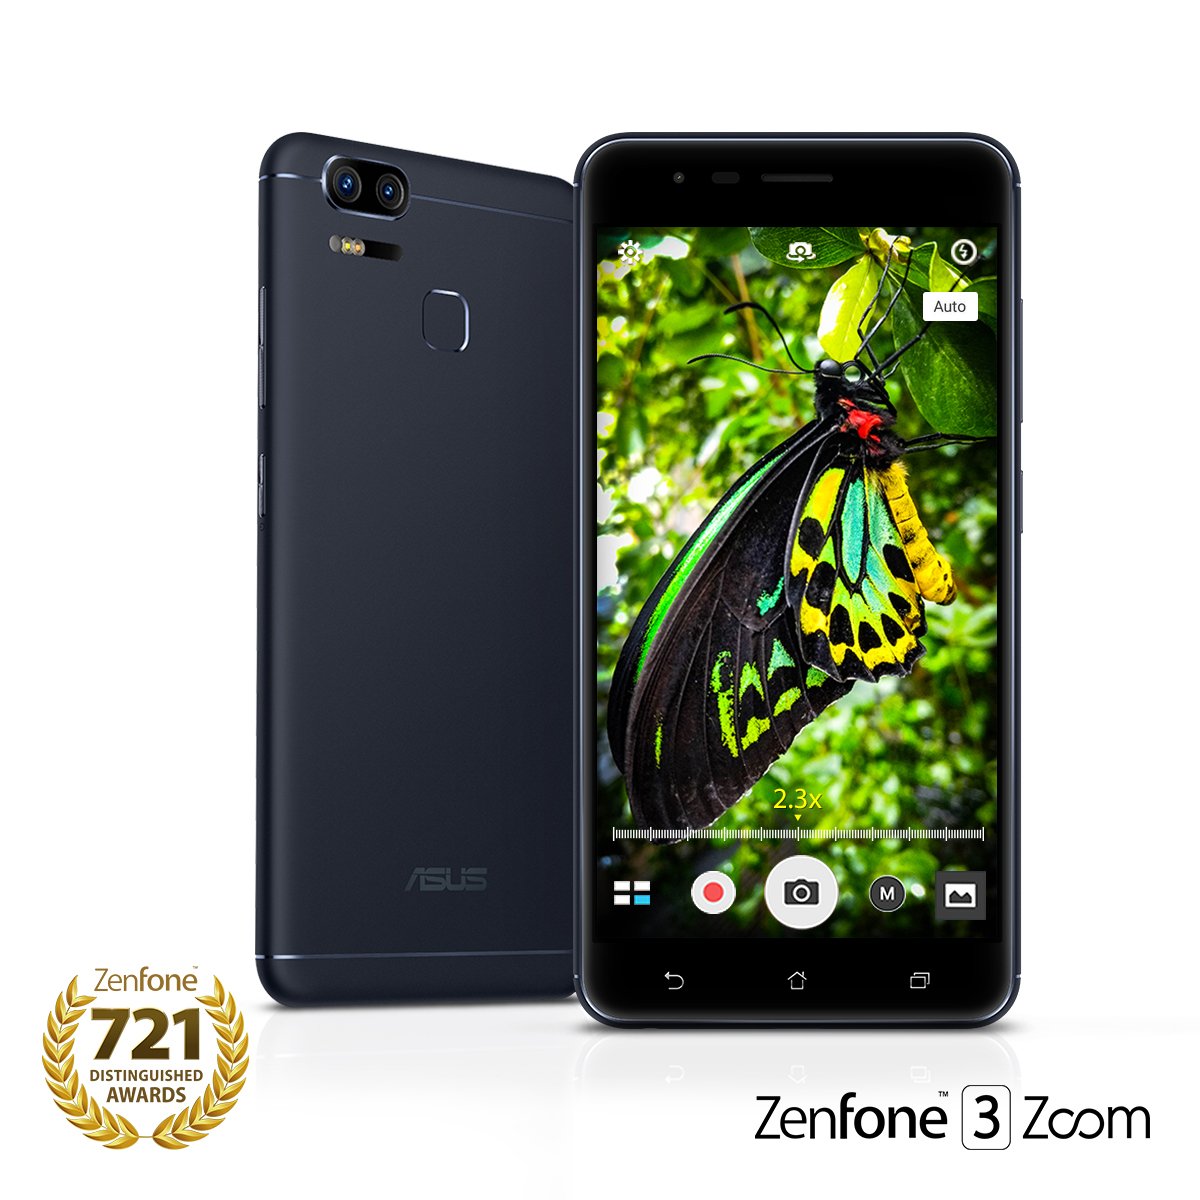 Immagine pubblicata in relazione al seguente contenuto: ASUS annuncia la disponibilit commerciale dello smartphone ZenFone 3 Zoom | Nome immagine: news26301_ASUS-ZenFone-3-Zoom_1.jpg